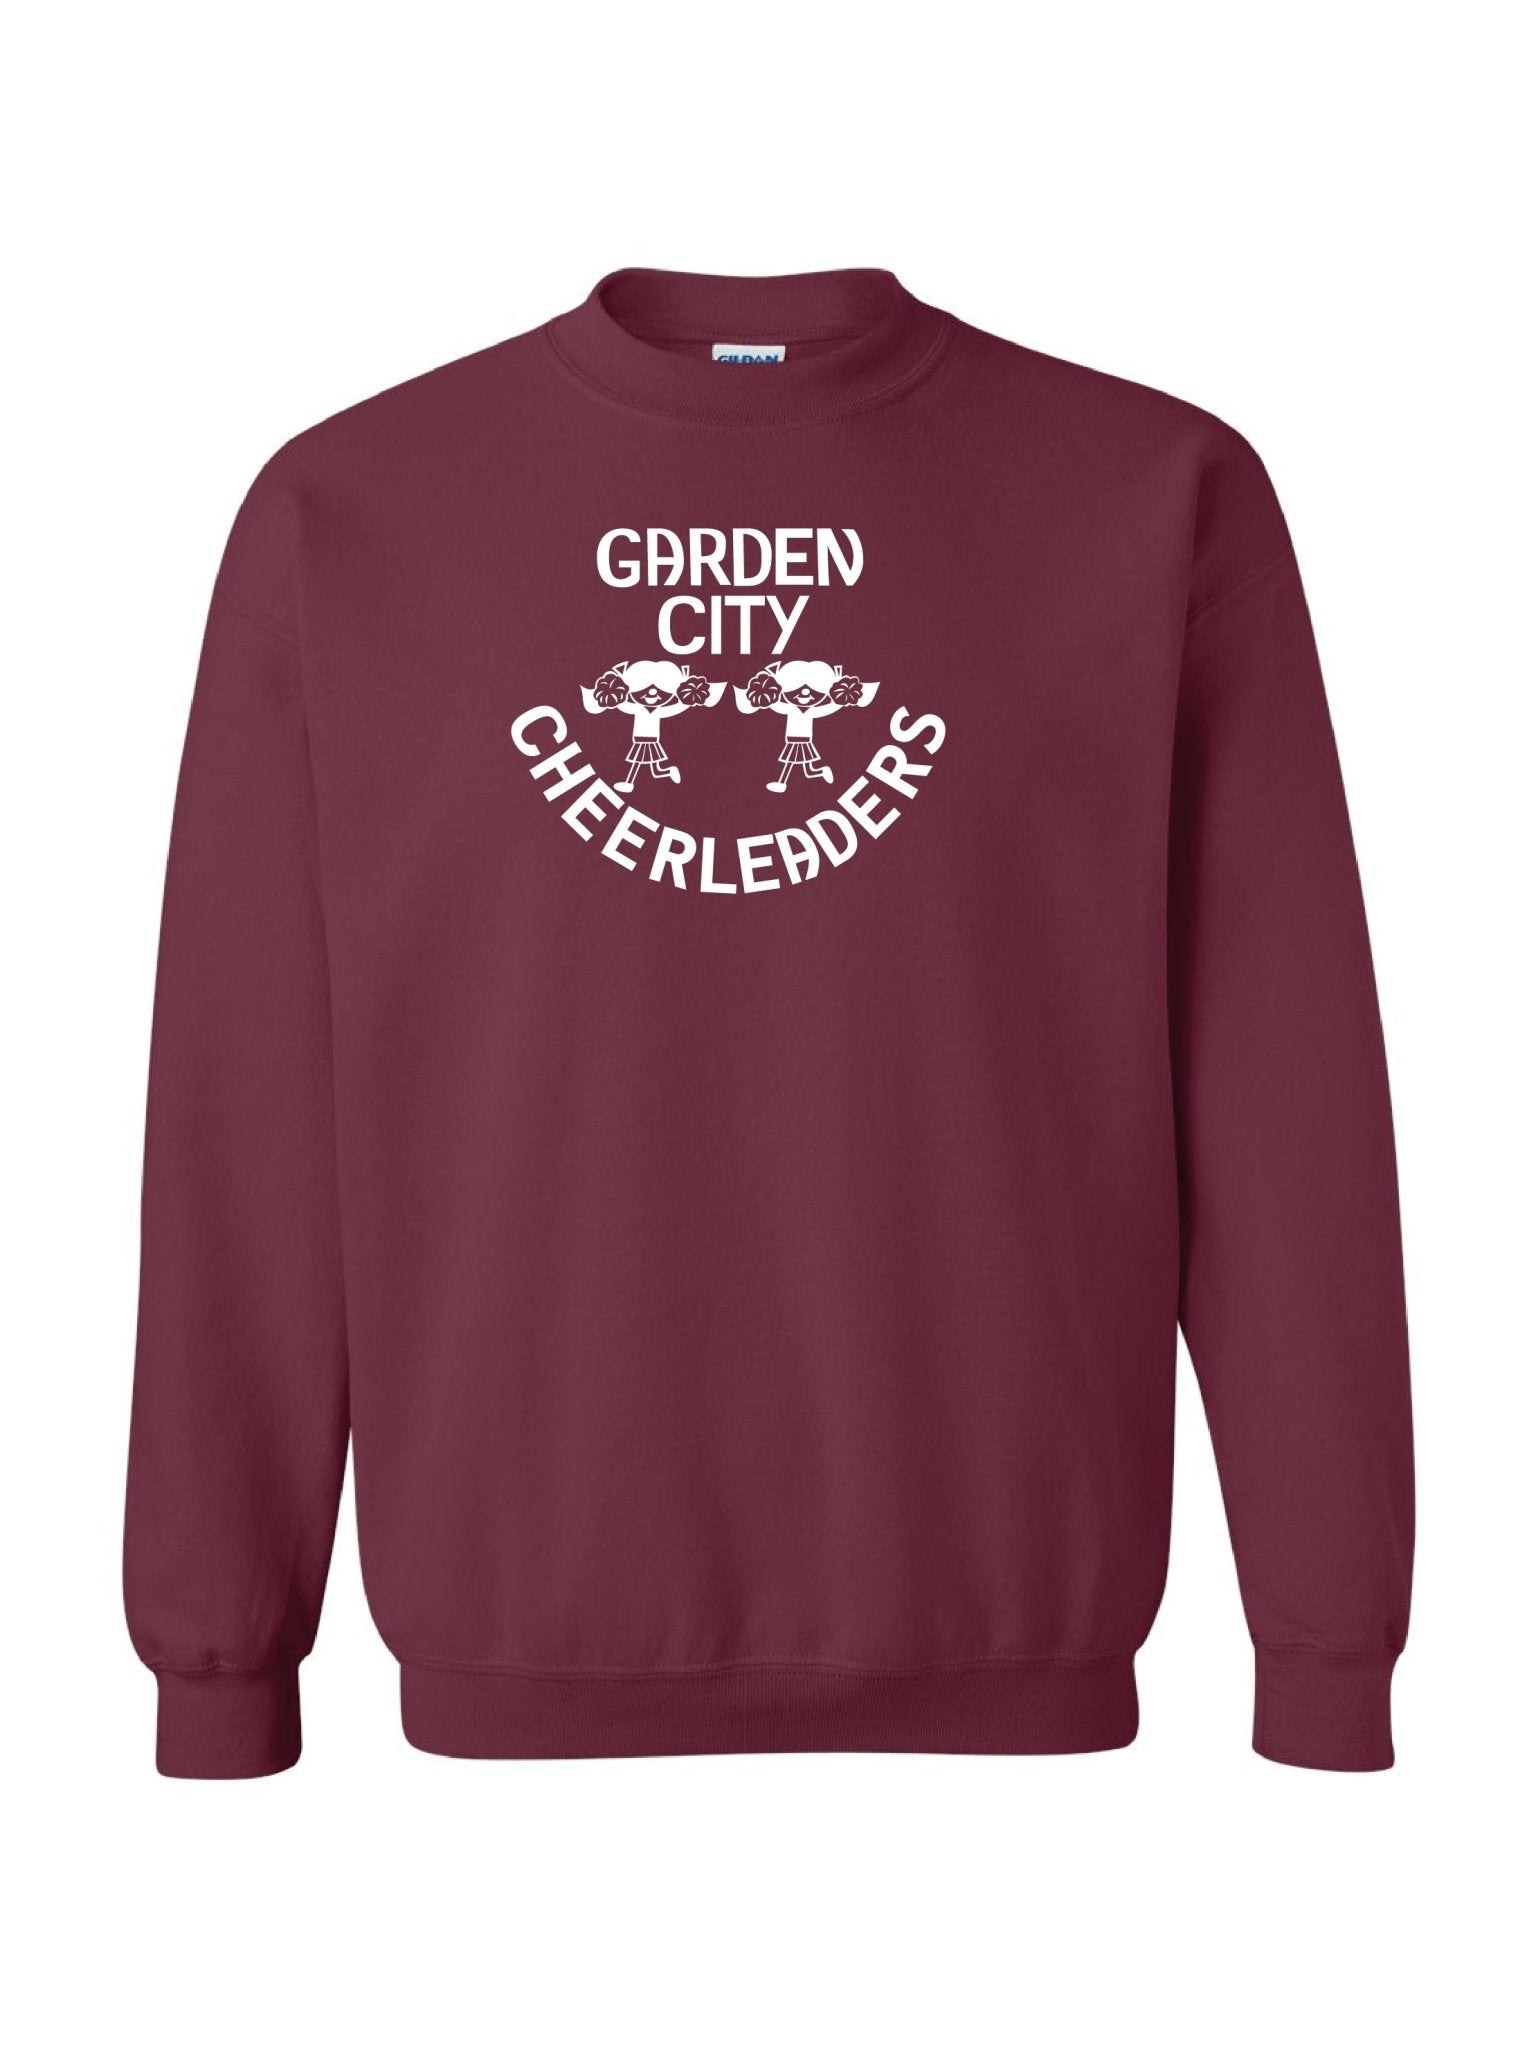 Adult Garden City Cheerleaders Crewneck Sweatshirt - Oddball Workshop